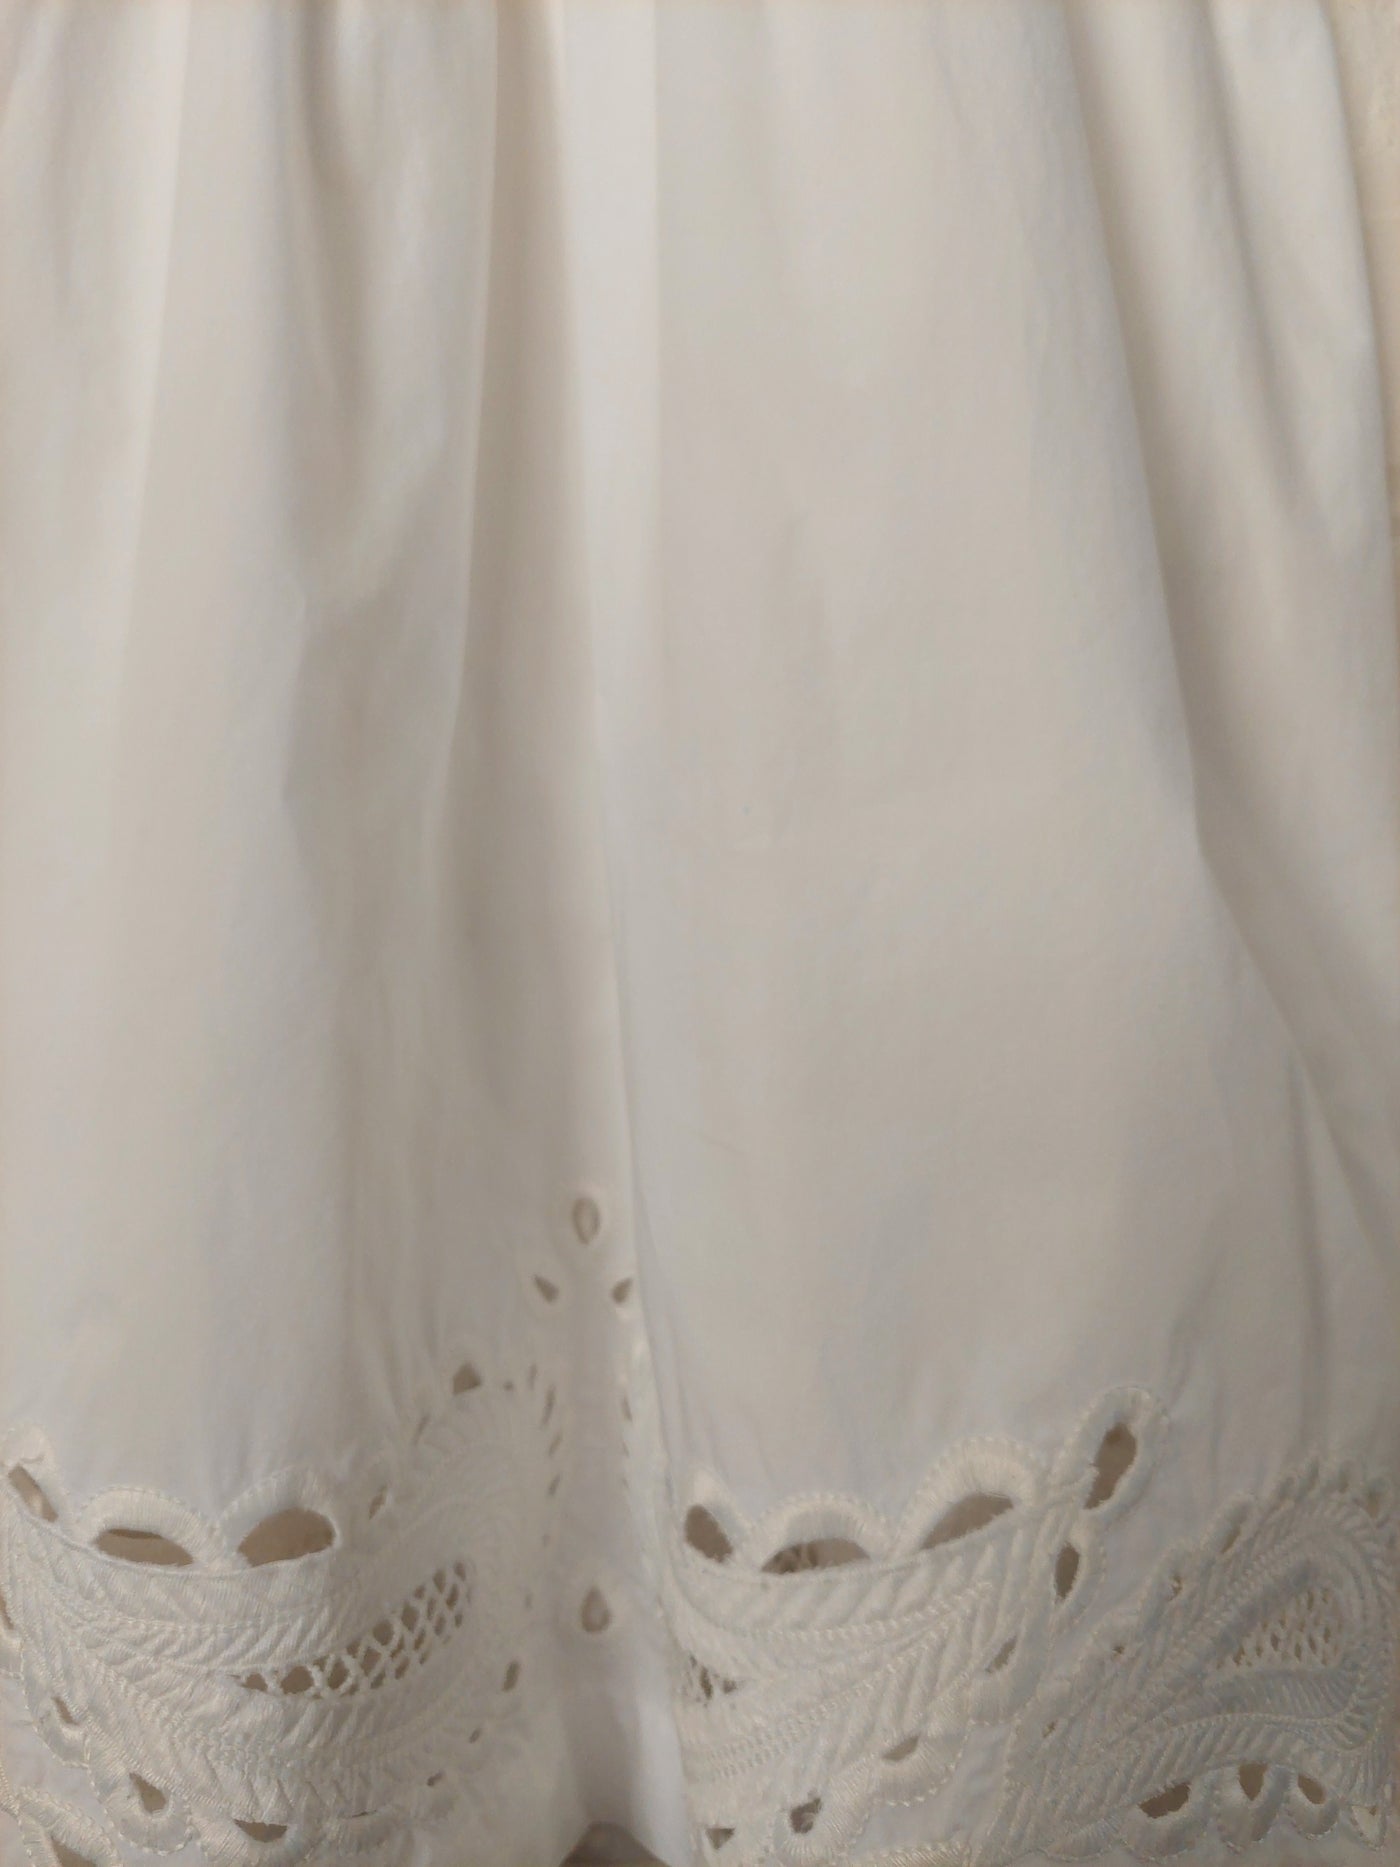 Morrison white cotton midi dress, Size 4 (14 / L)